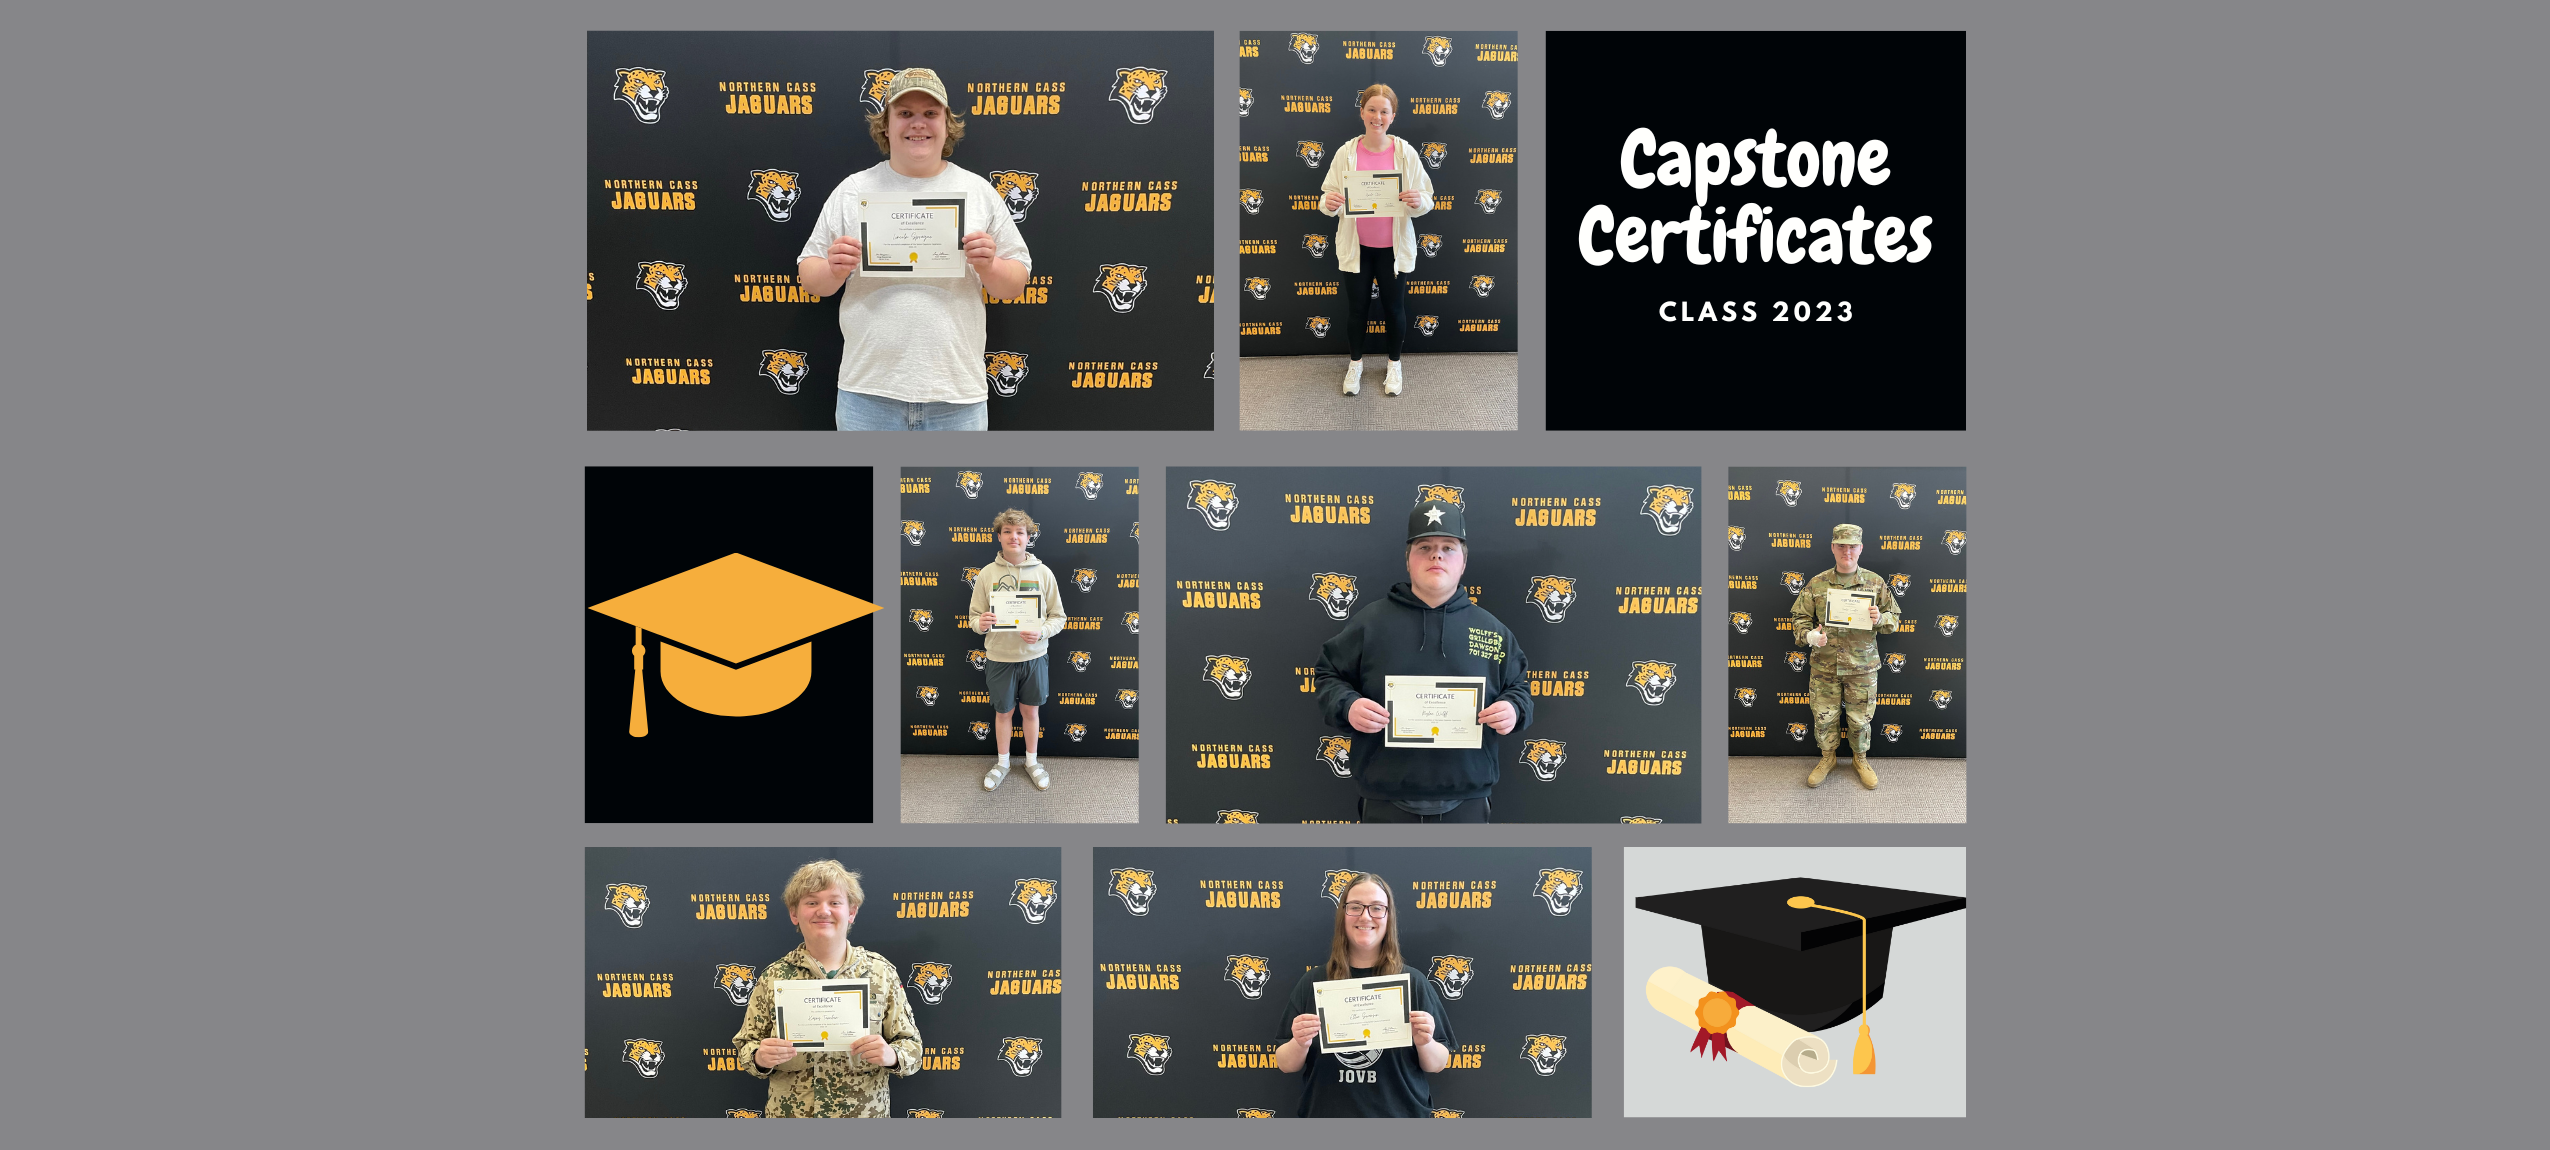 Capstone Certificates 2023